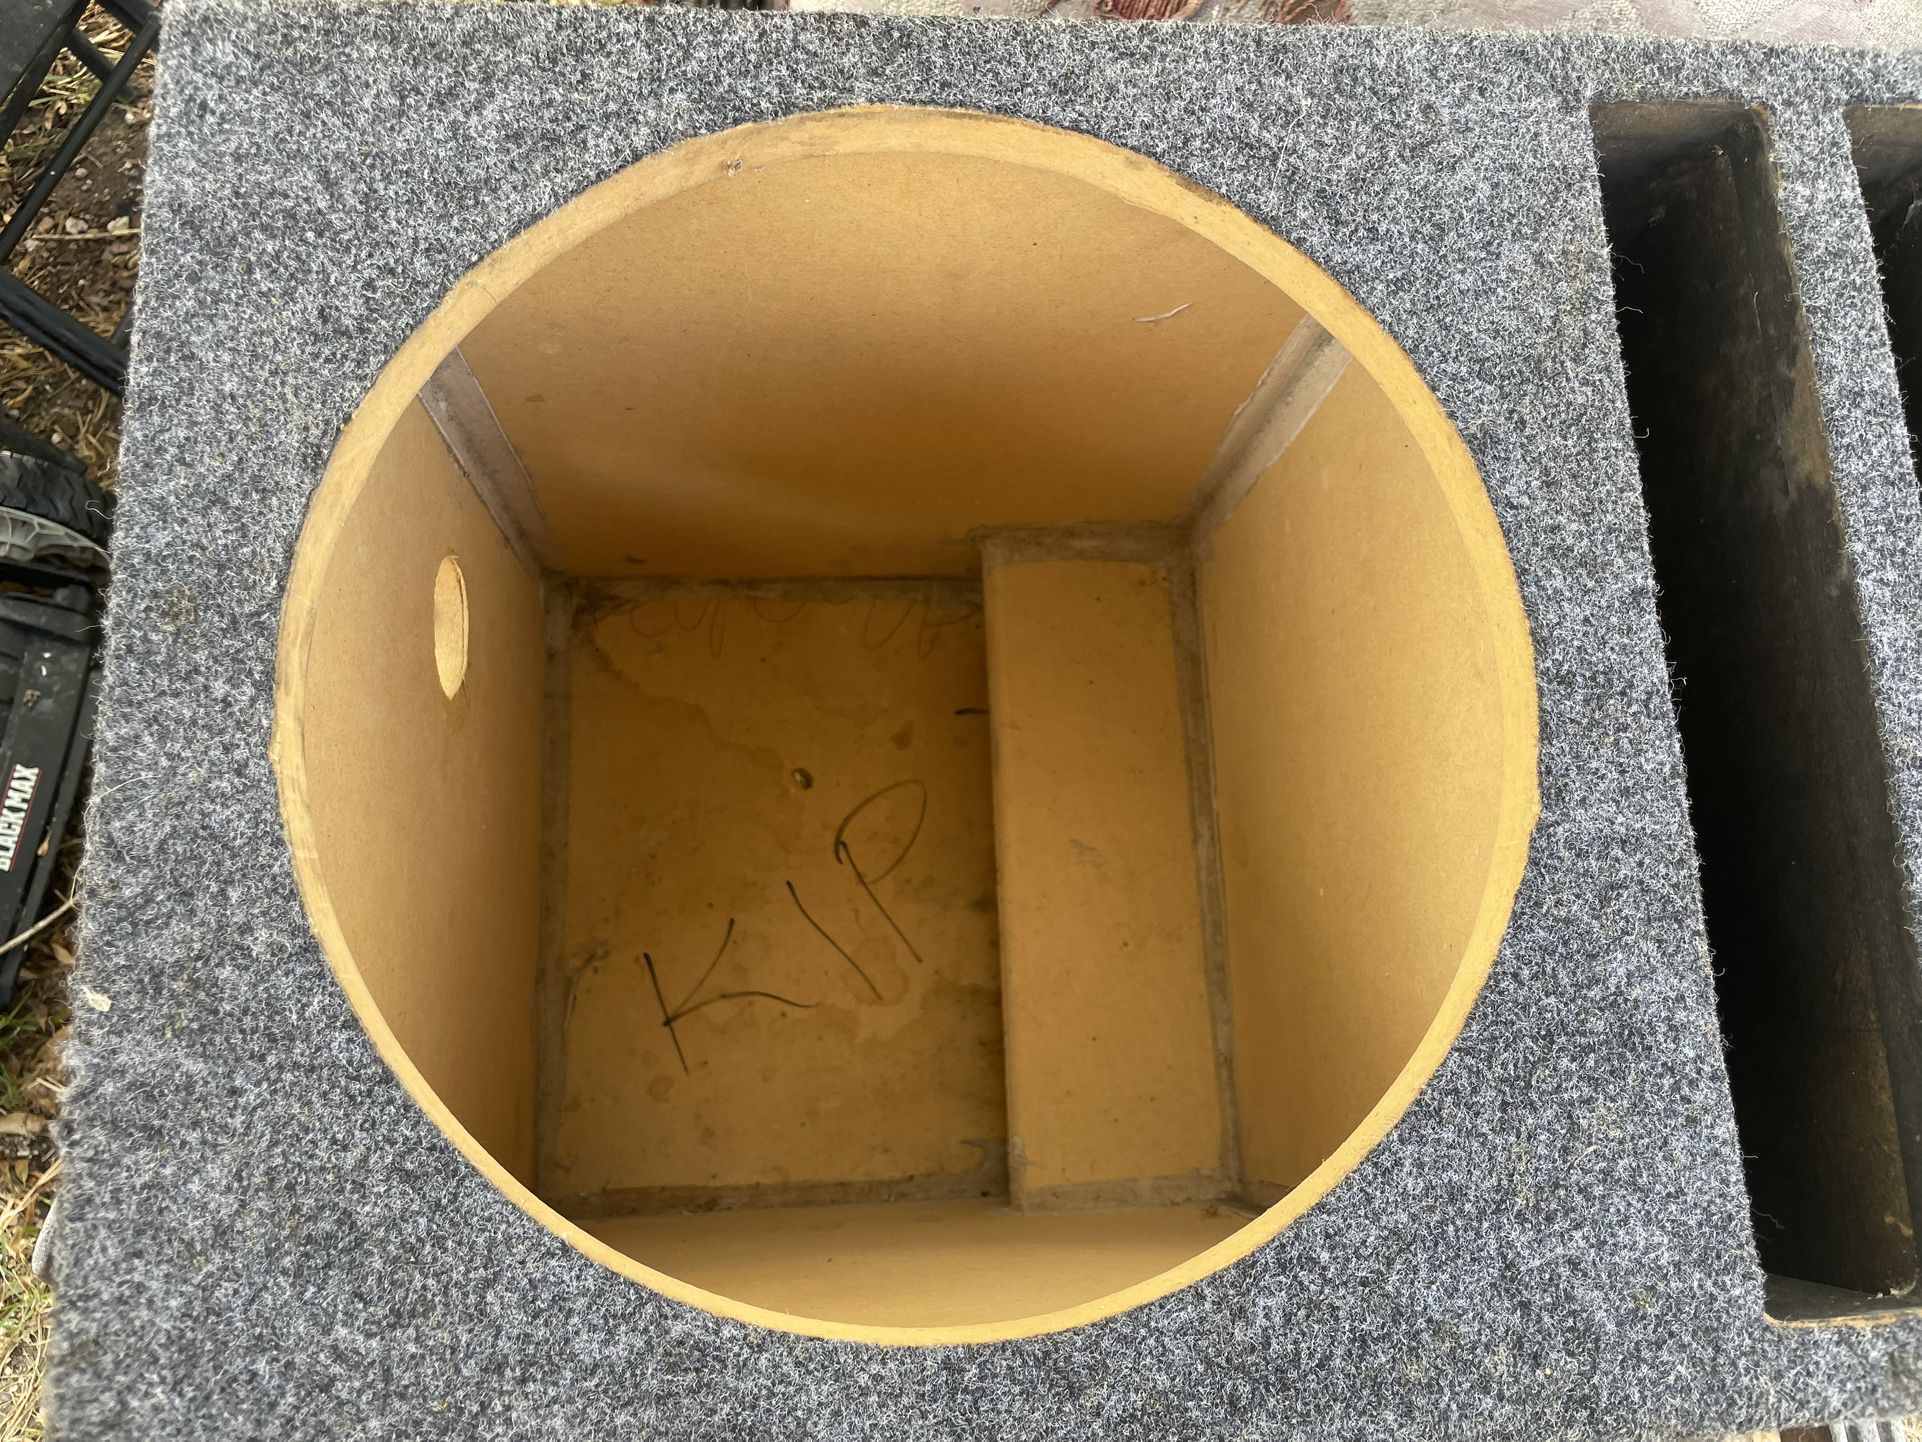 Speaker Box 